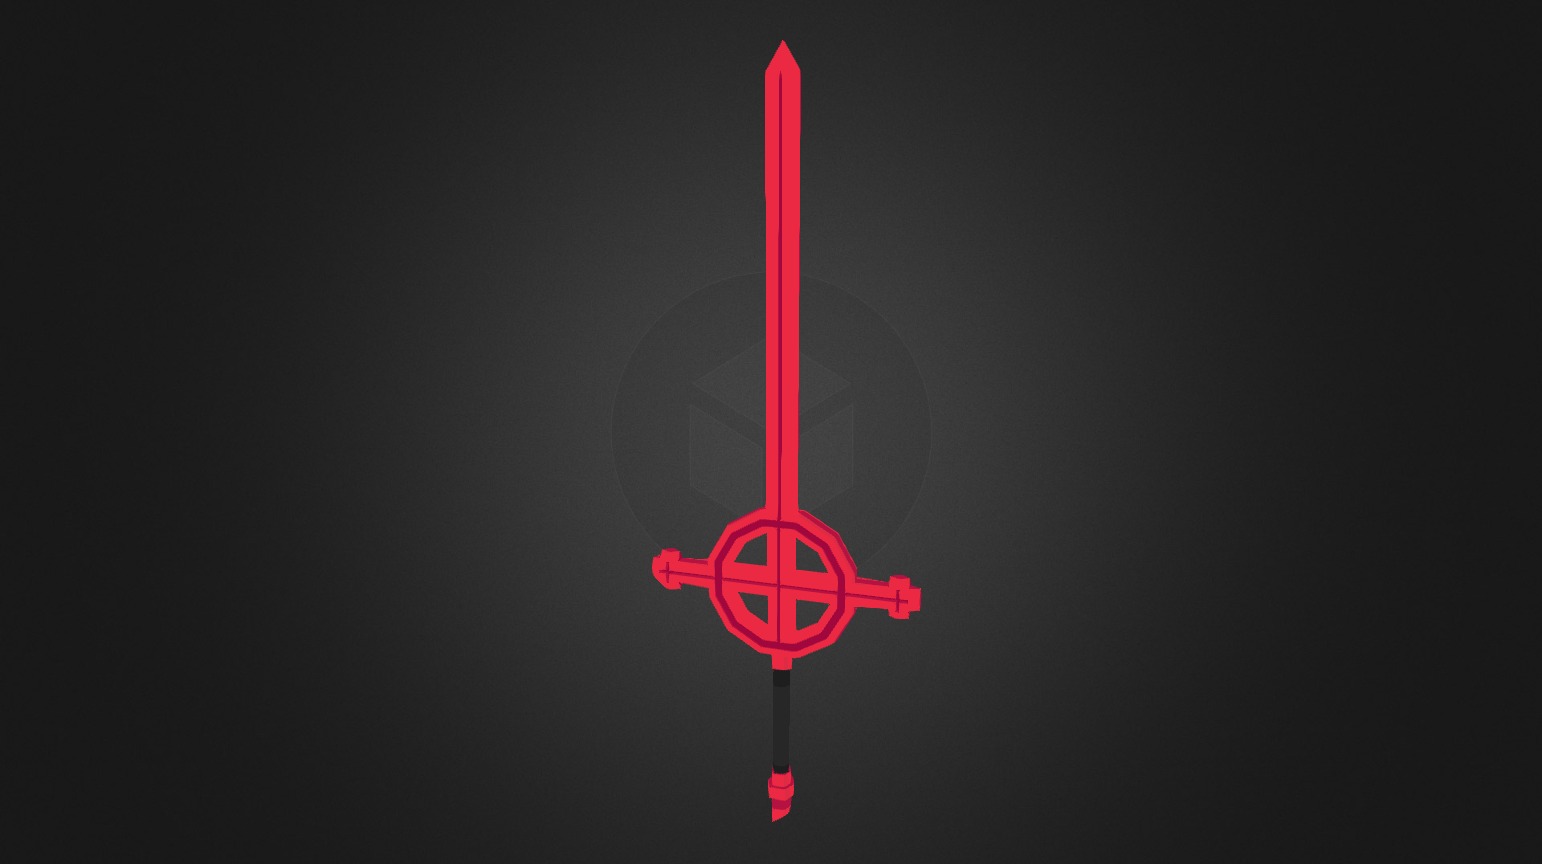 Demon Blood Sword